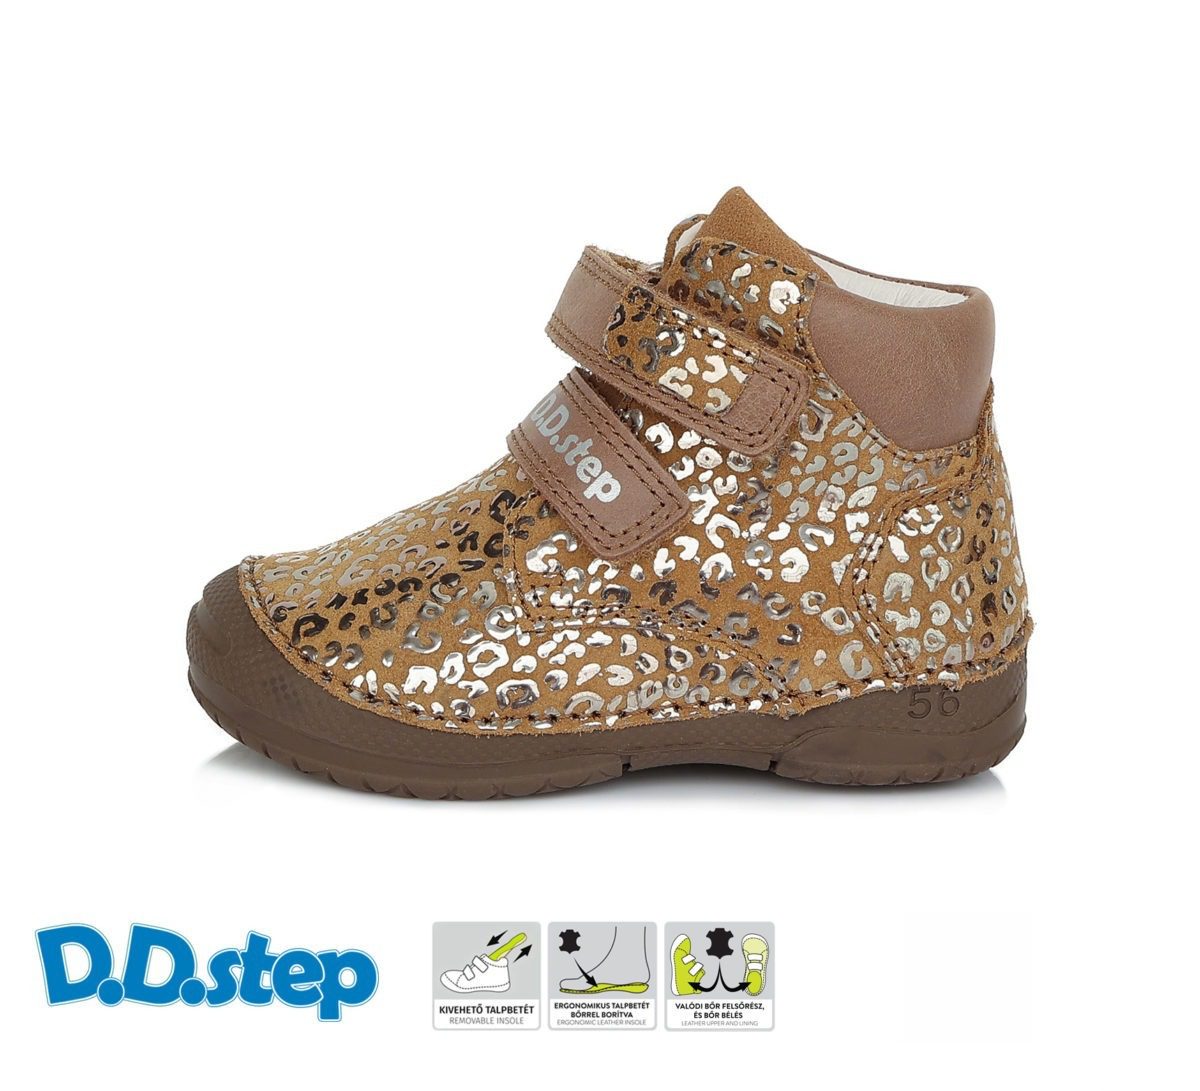 DD STEP Dievčenské vyššie topánky chocolate A038-598 | Welcomebaby.sk